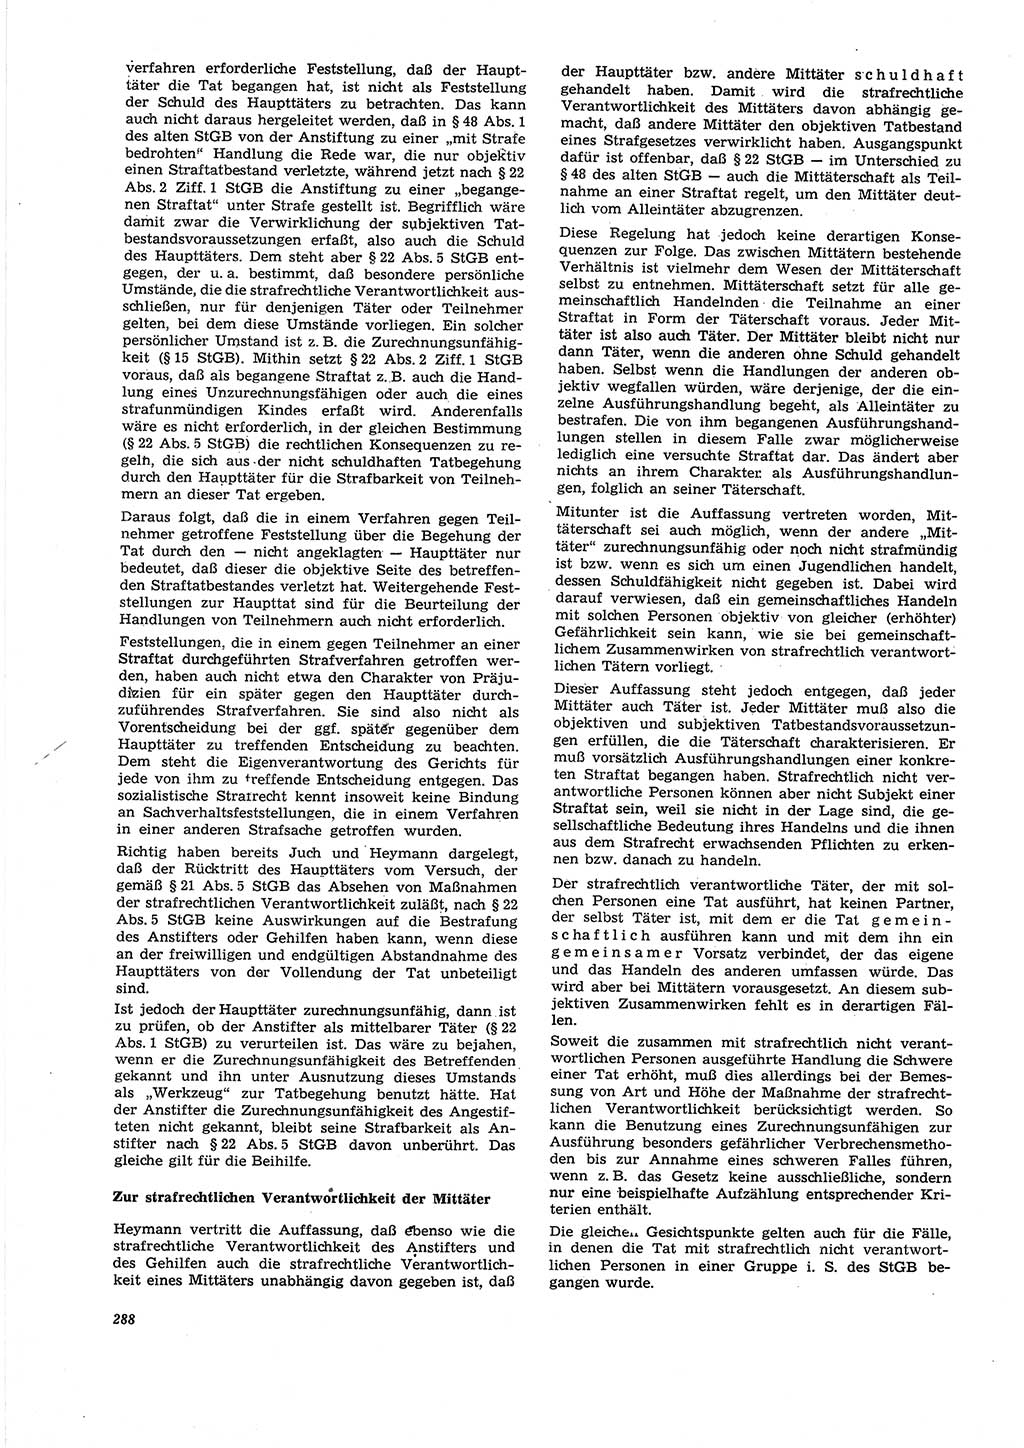 Neue Justiz (NJ), Zeitschrift für Recht und Rechtswissenschaft [Deutsche Demokratische Republik (DDR)], 27. Jahrgang 1973, Seite 288 (NJ DDR 1973, S. 288)